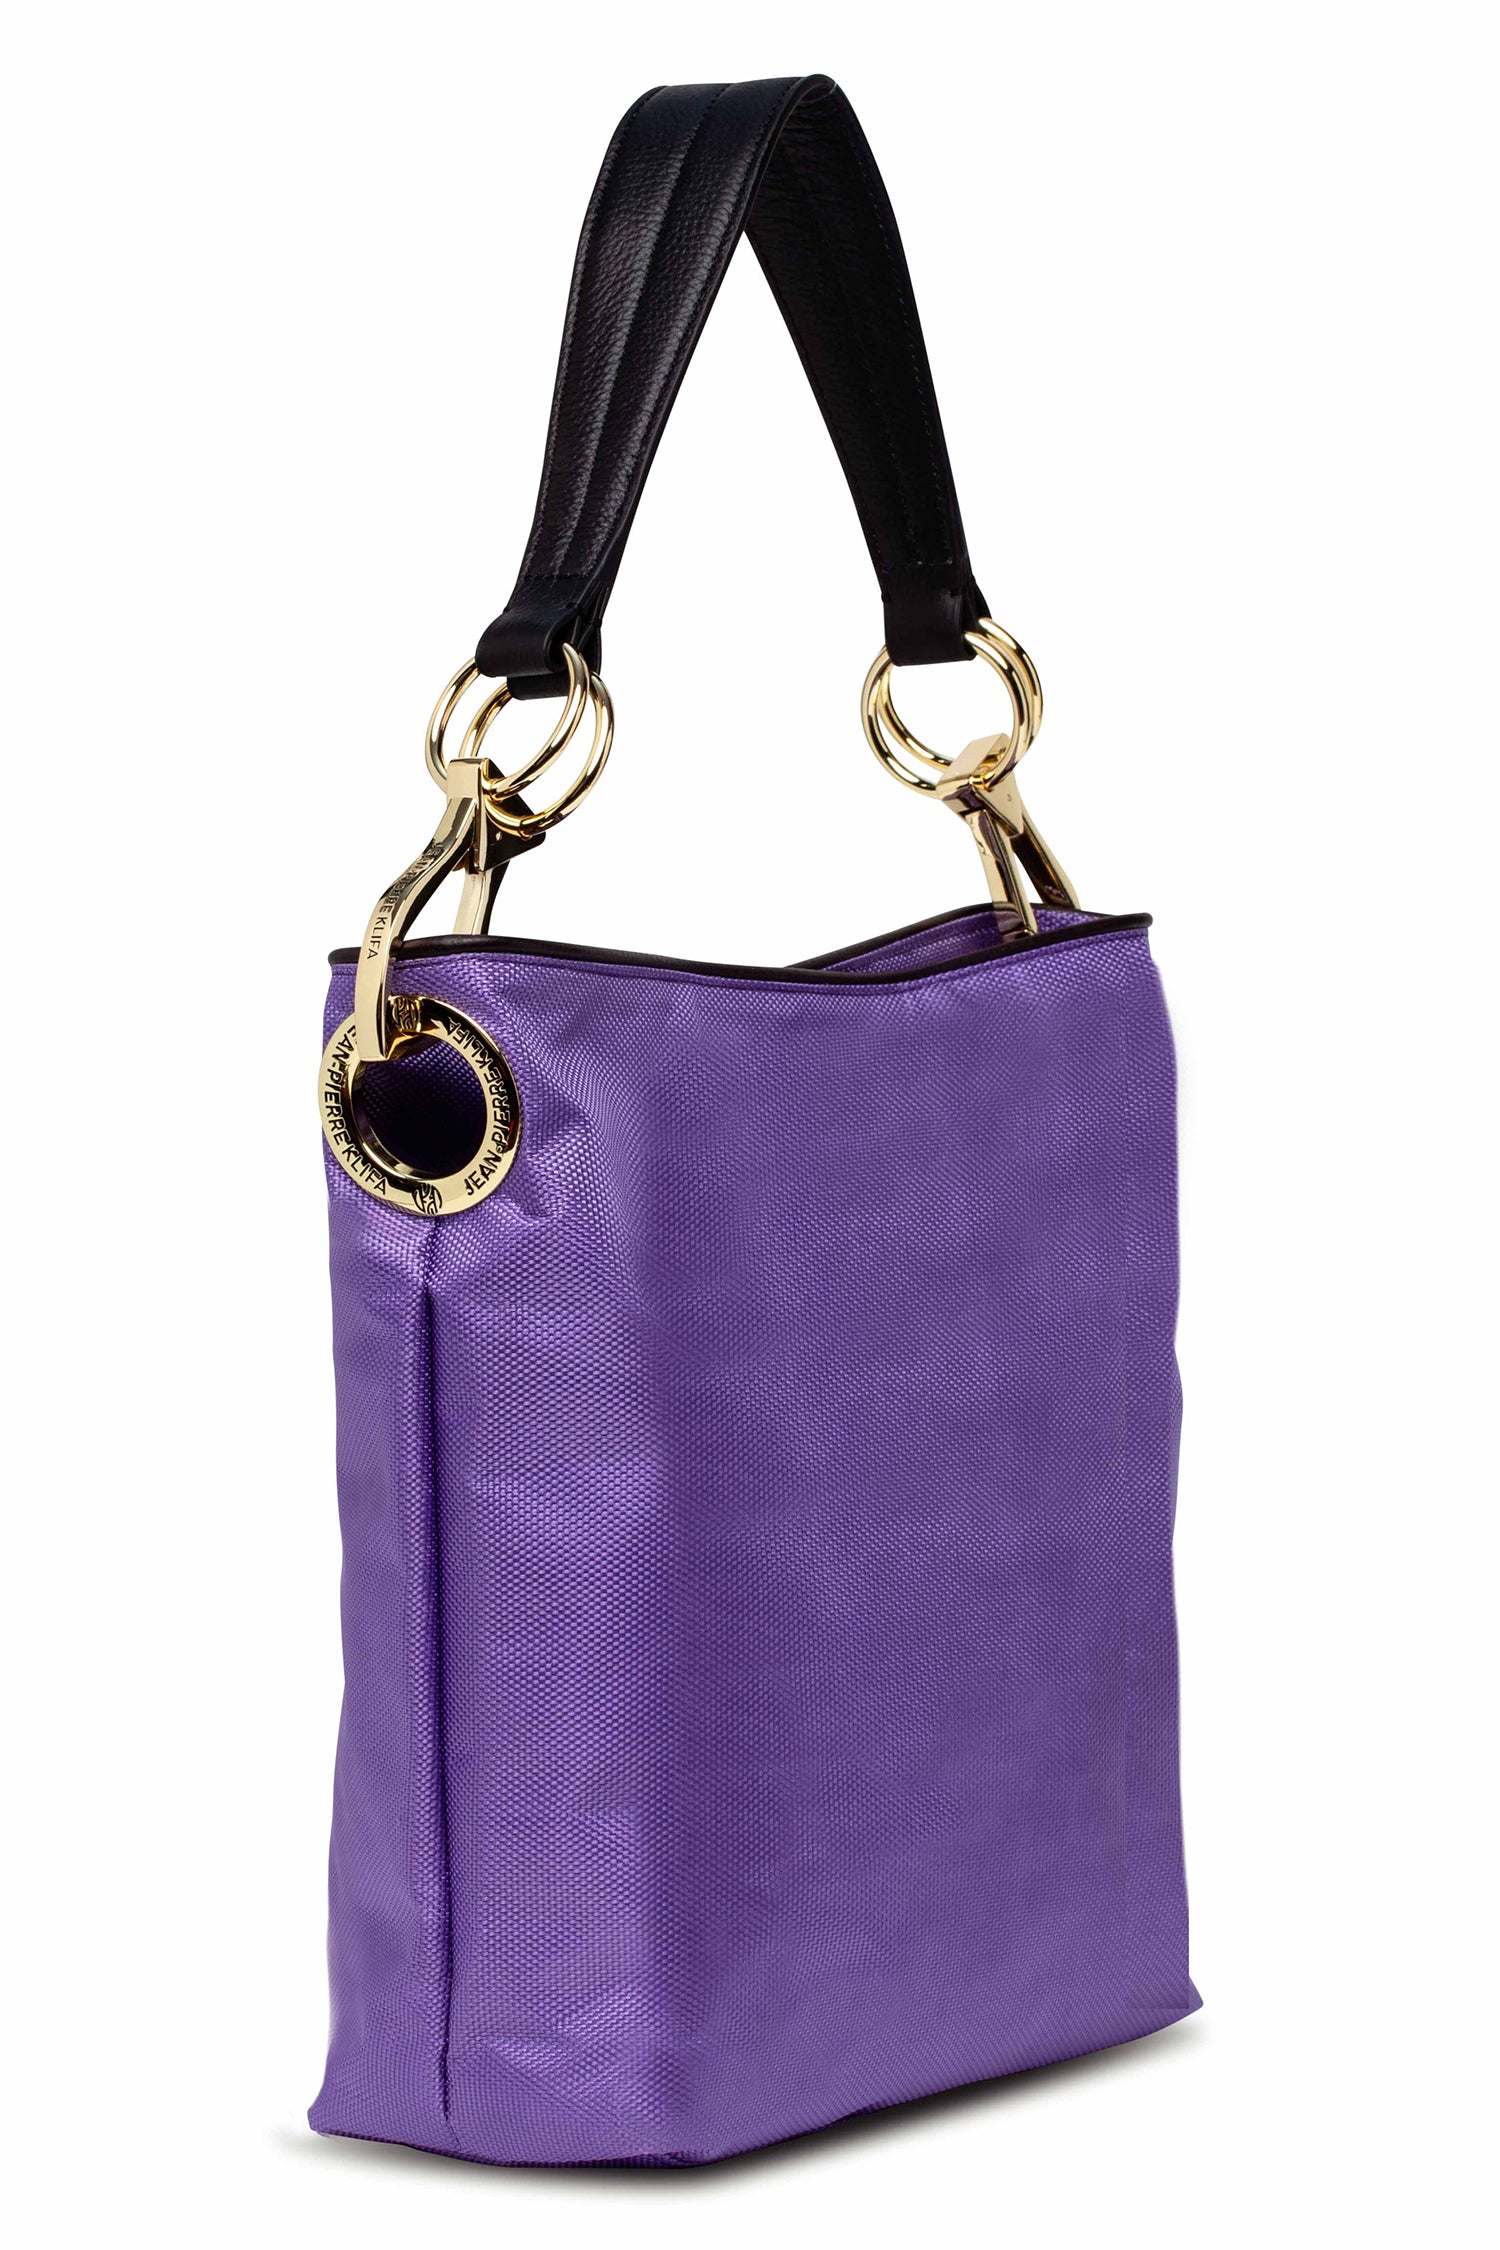 Nylon Bucket Bag Violet Handbag Jean-Pierre Klifa   